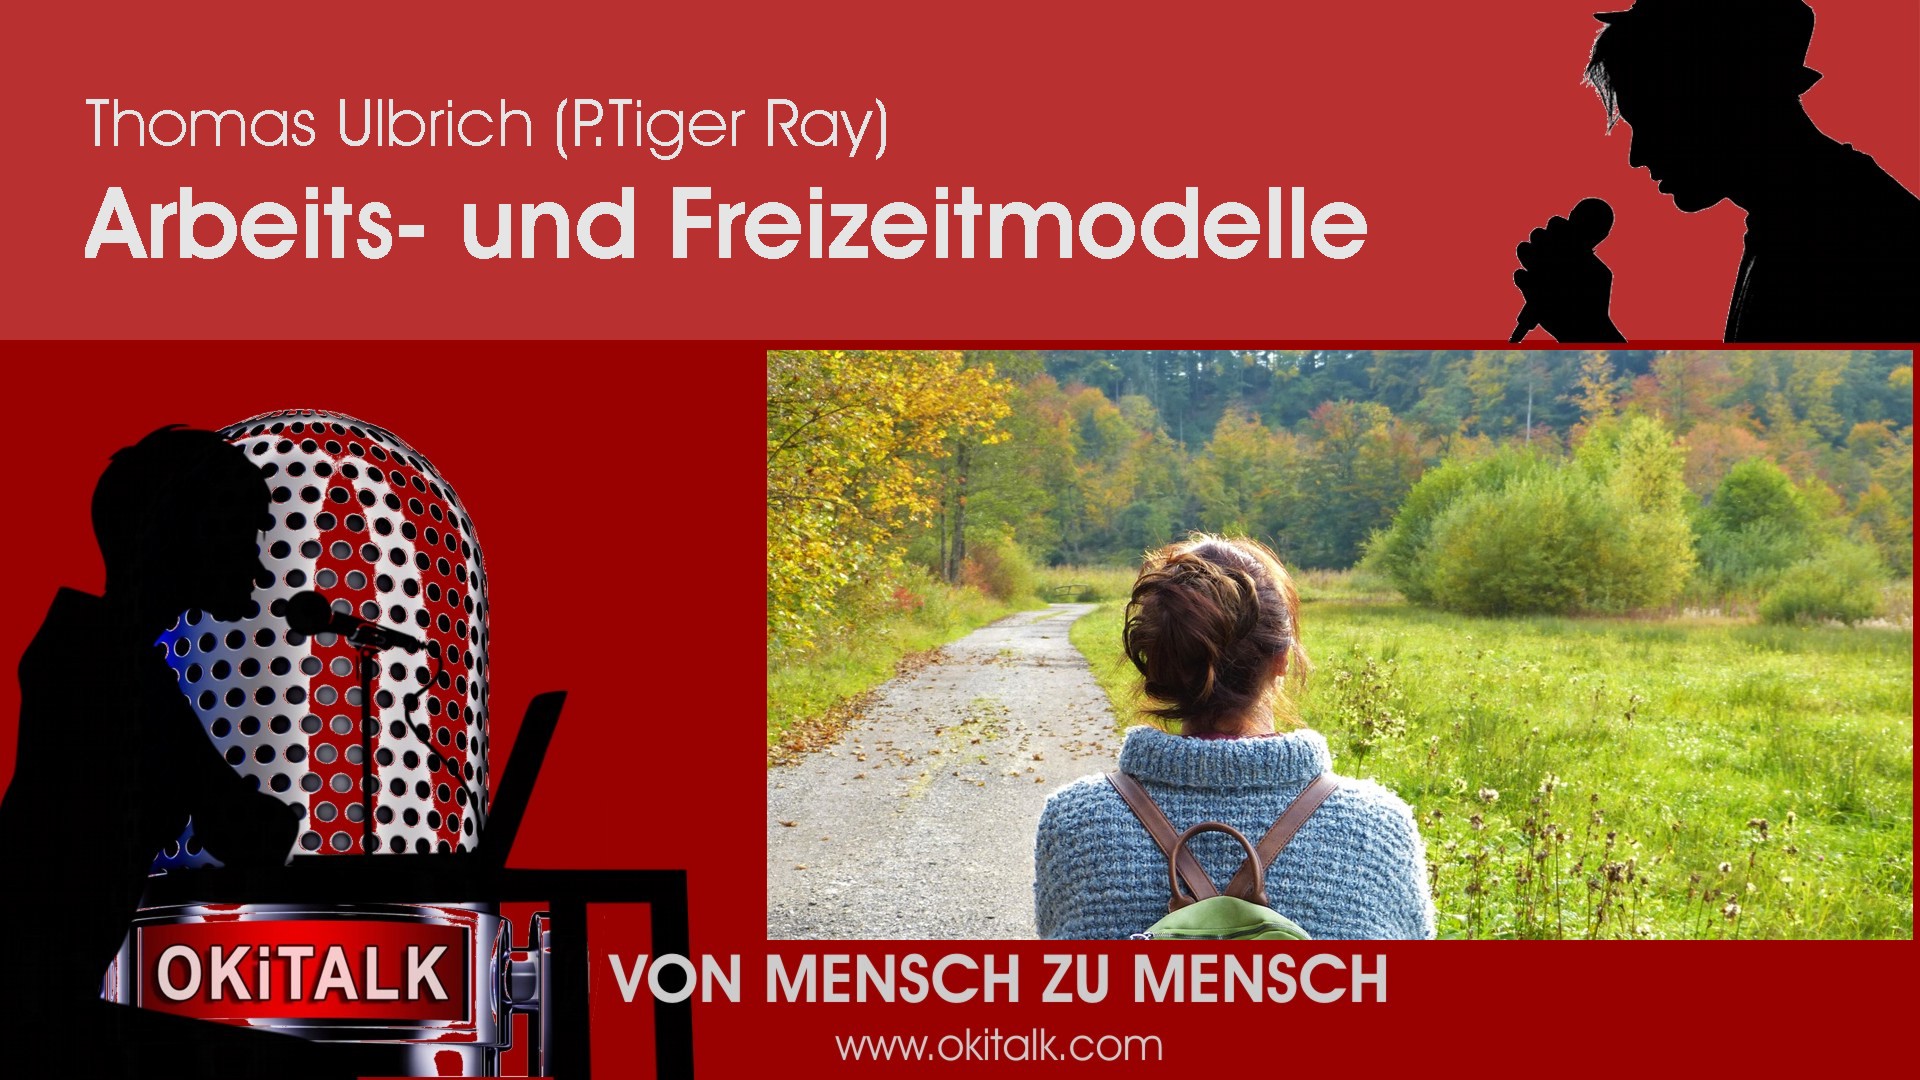 Arbeits- und Freizeitmodelle - P. Tiger Ray (Thomas Ulbrich)